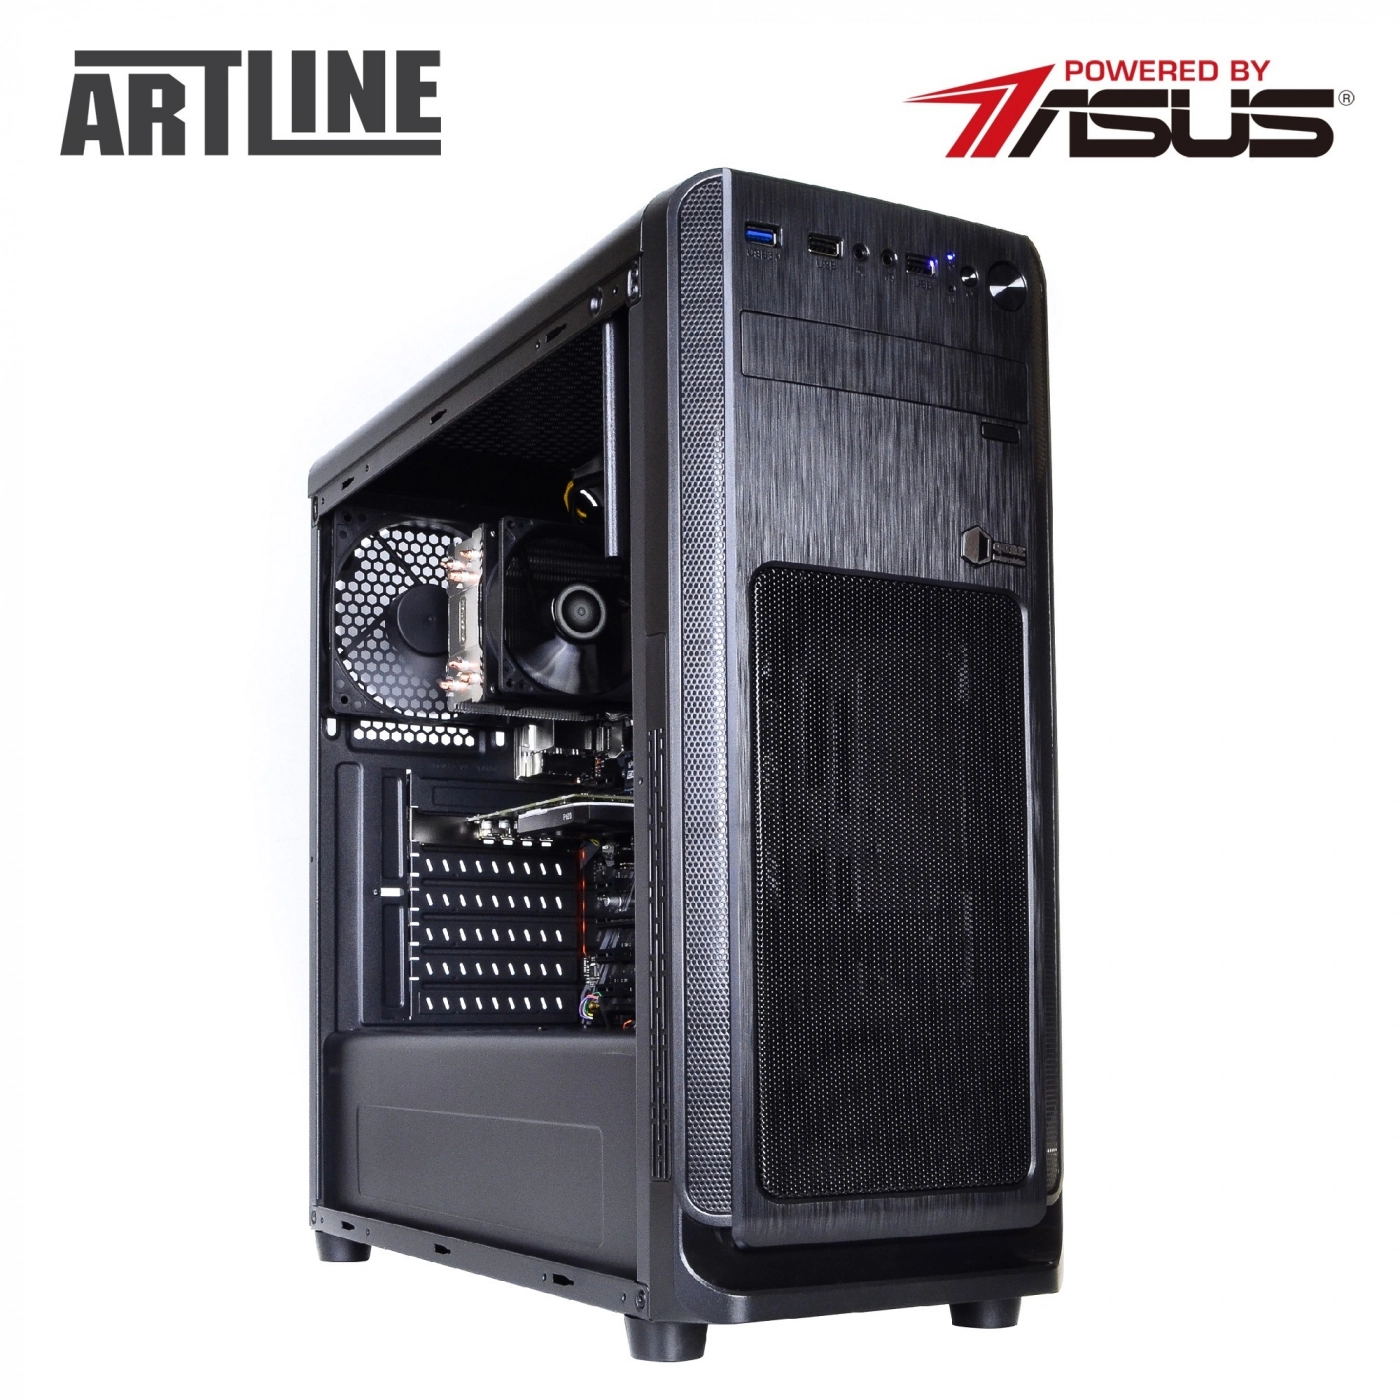 Купить Сервер ARTLINE Business T25v23 - фото 8